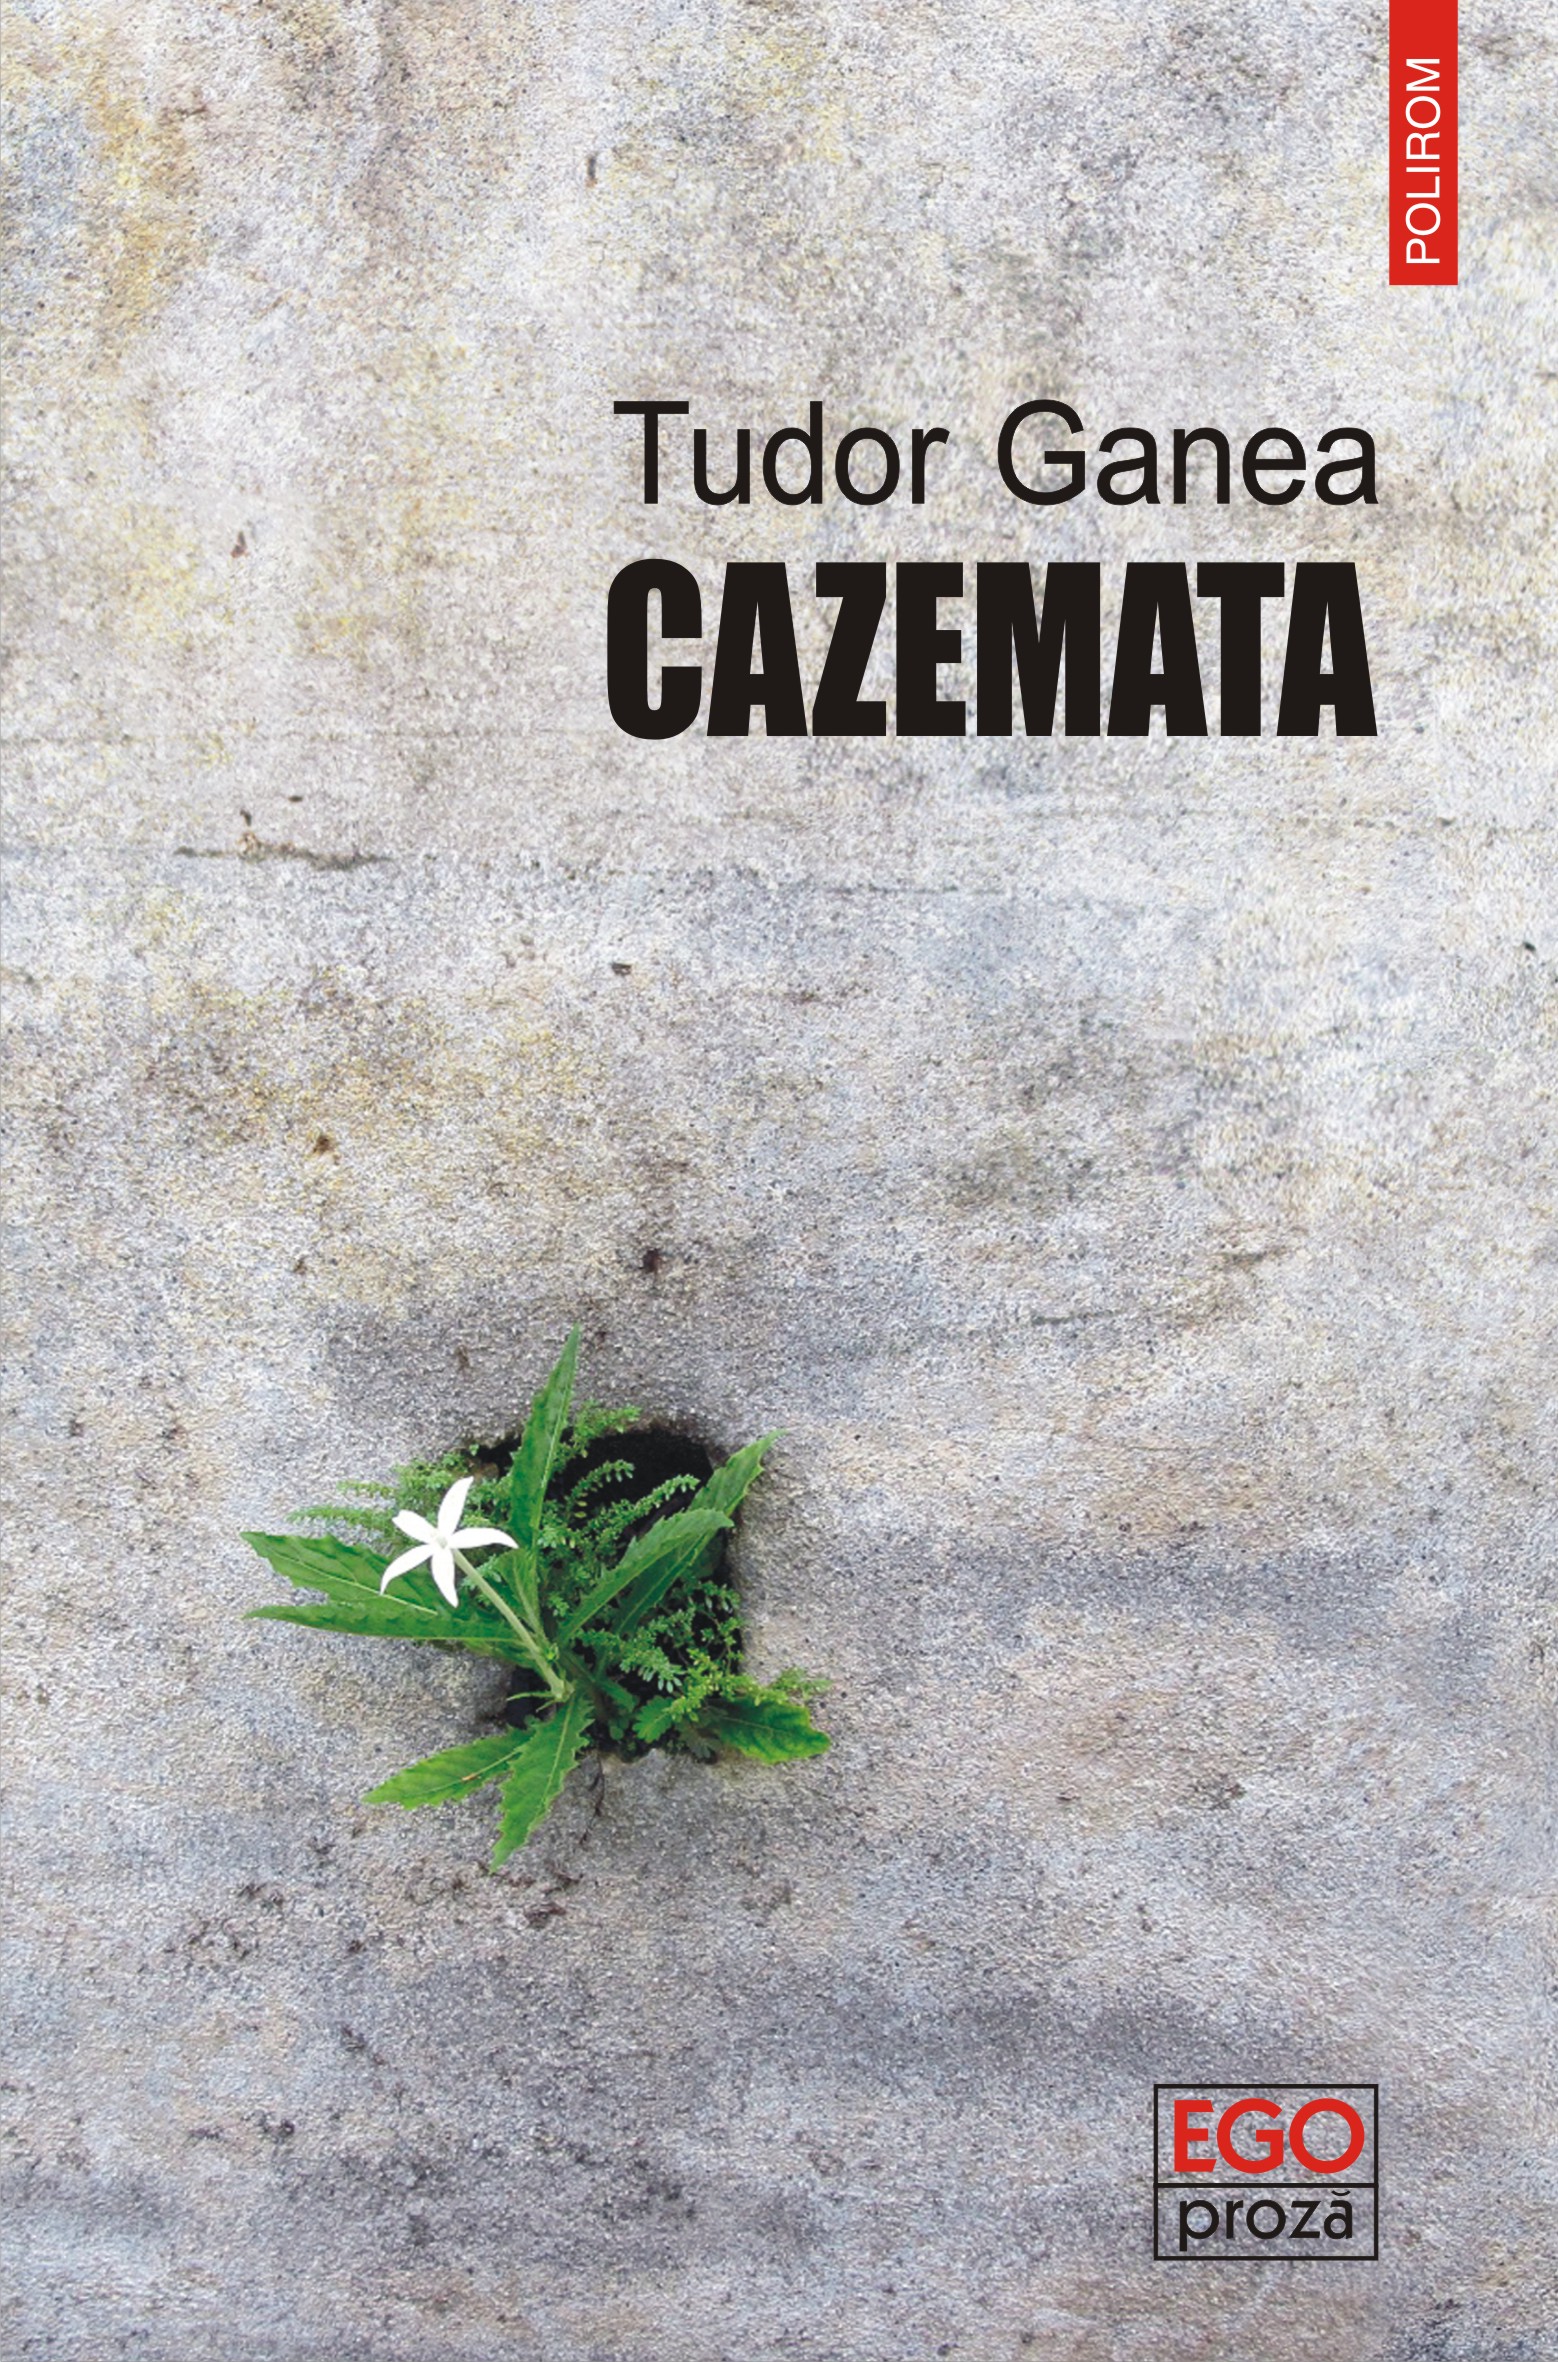 eBook Cazemata - Tudor Ganea